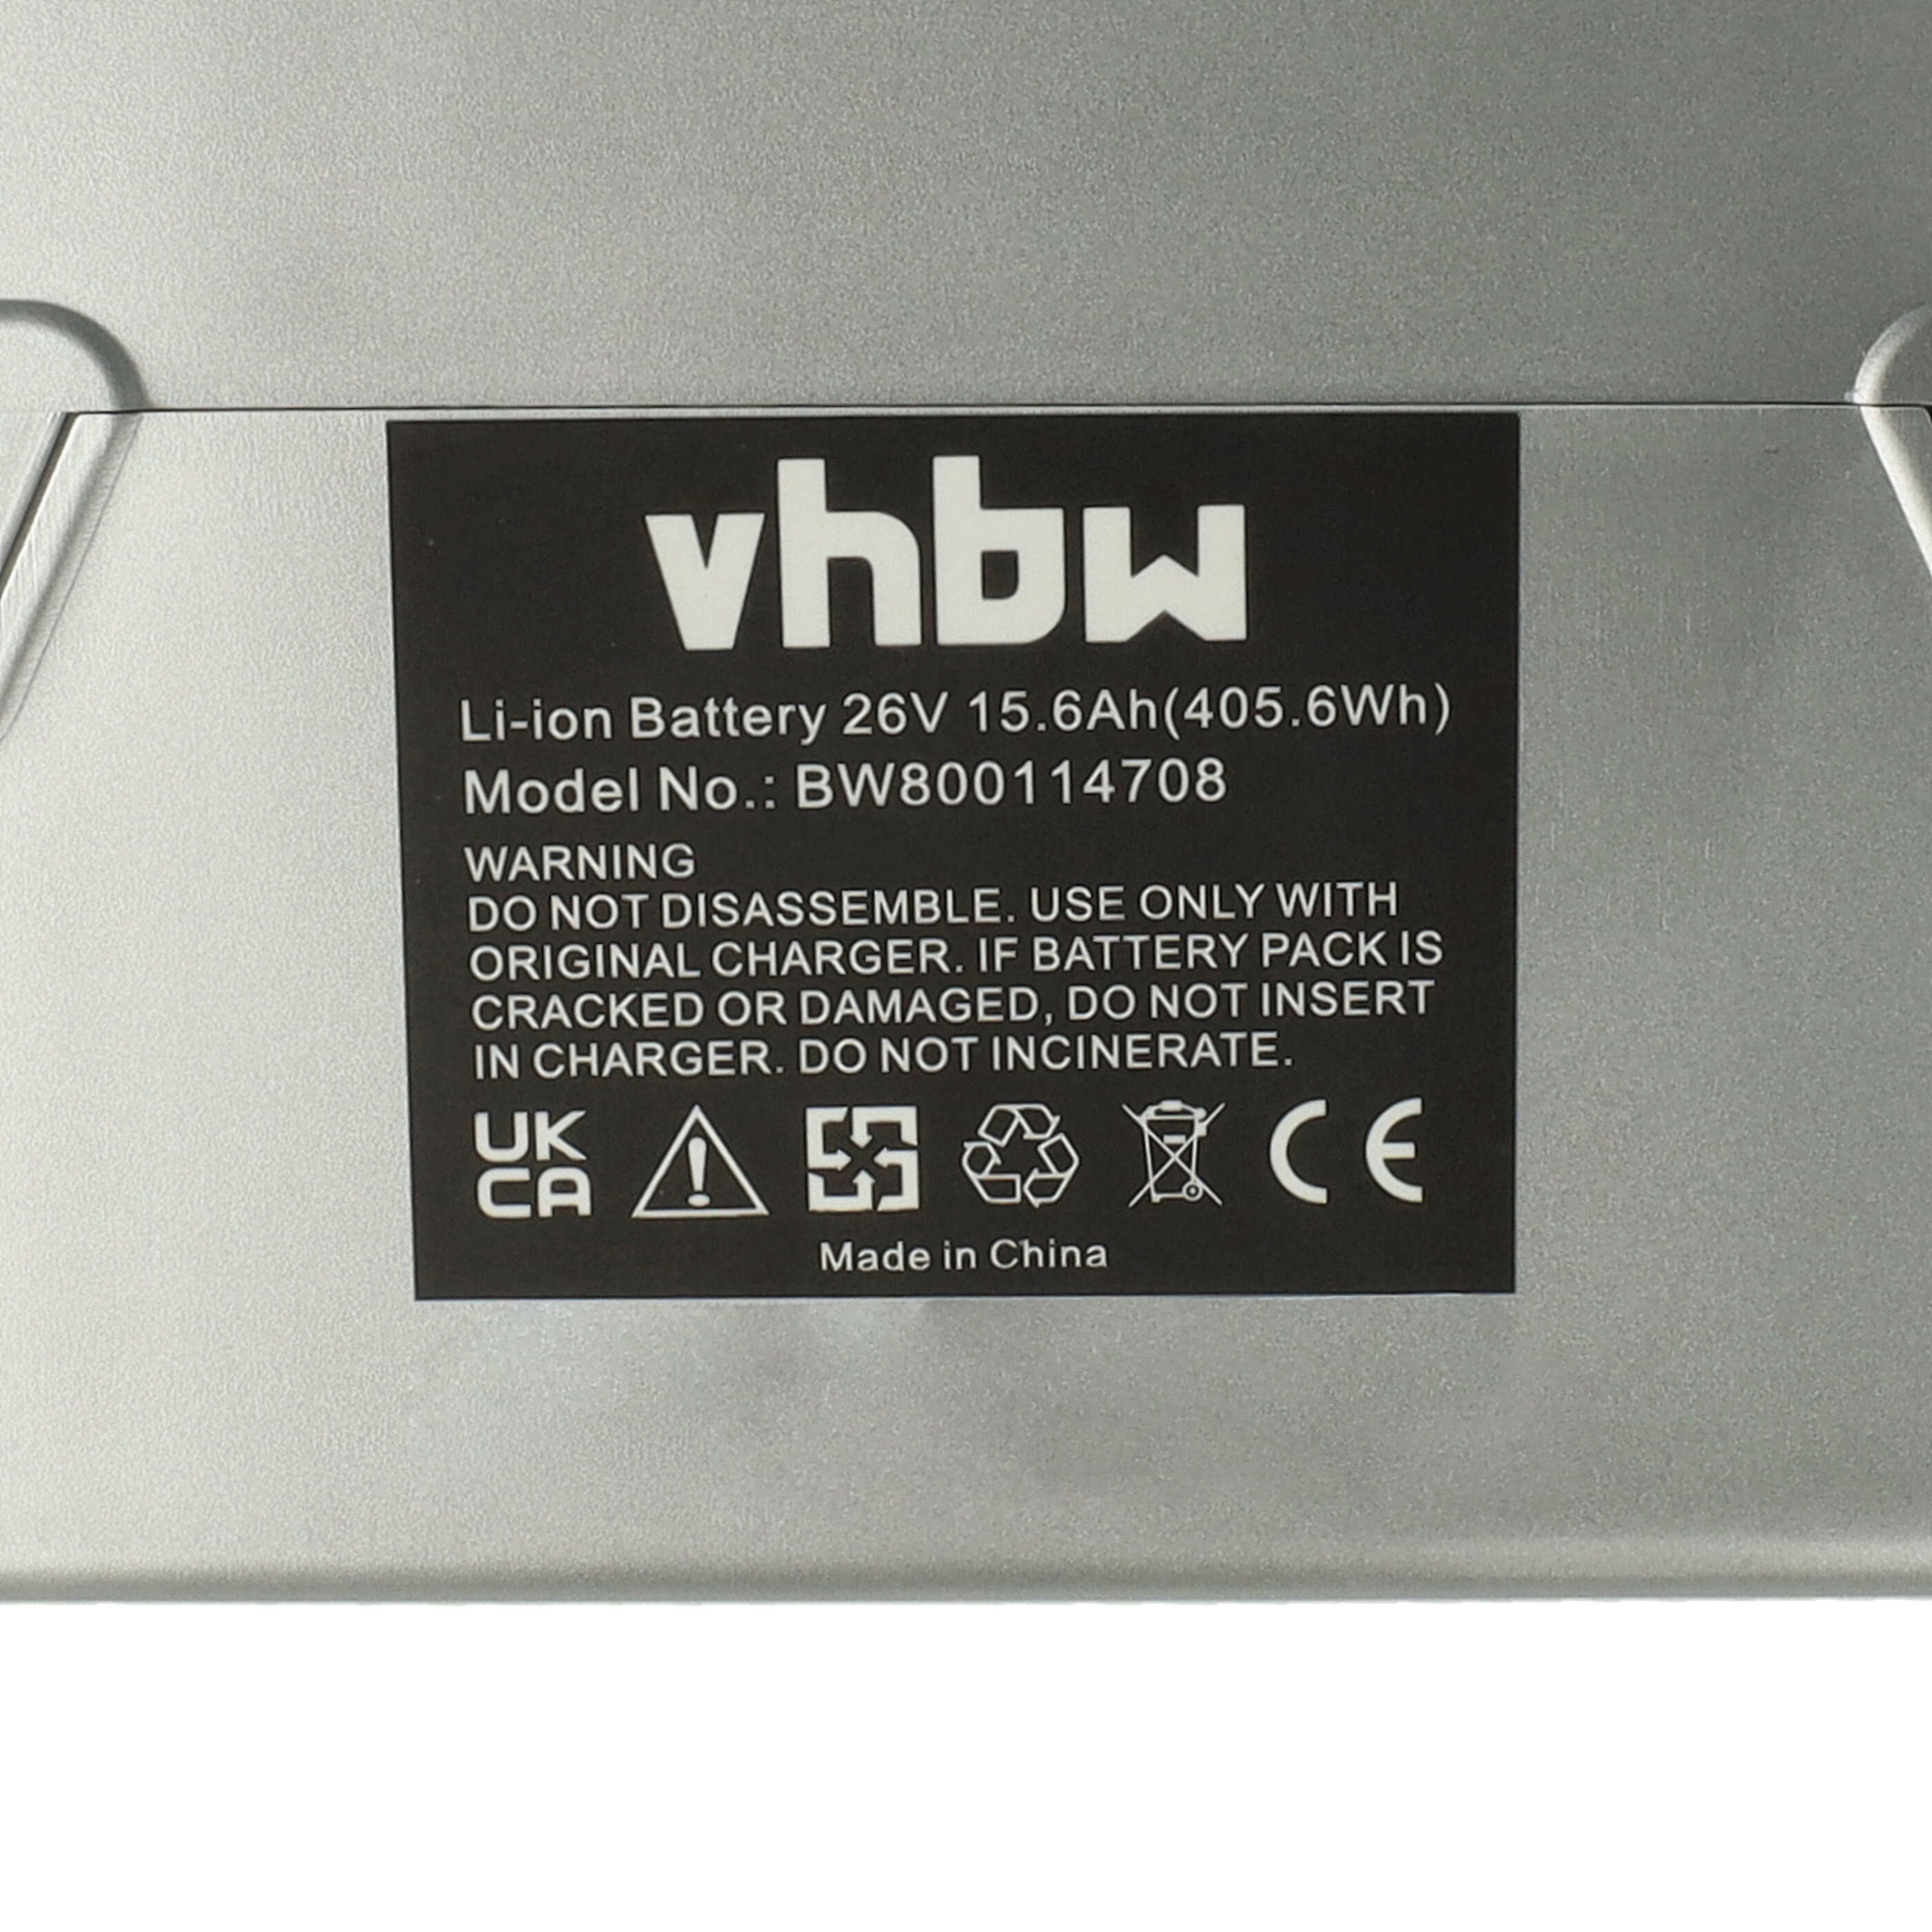 Batterie remplace NKY224B02, NKY190B02 pour vélo électrique, E-bike Kalkhoff - 15600mAh, 25,2V, Li-ion